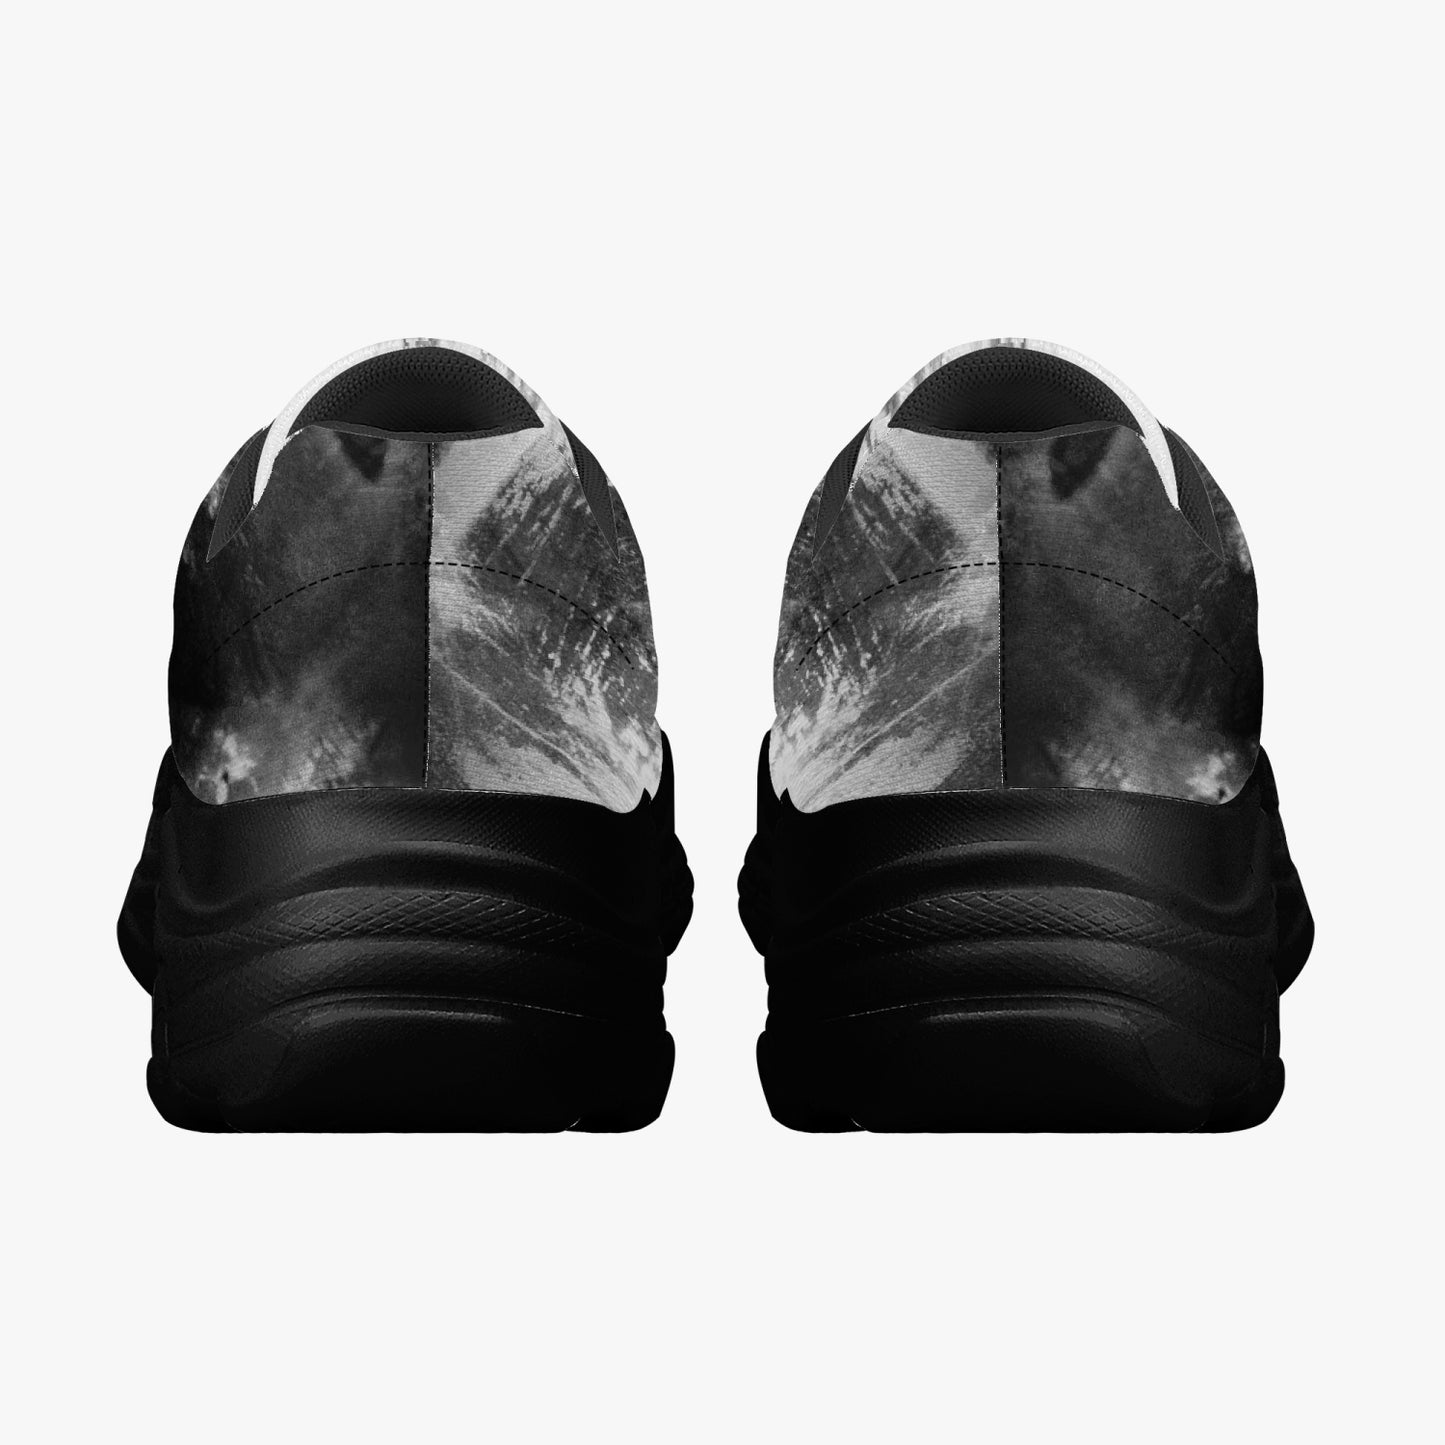 Zapatillas unisex "niebla" (blanco / negro)